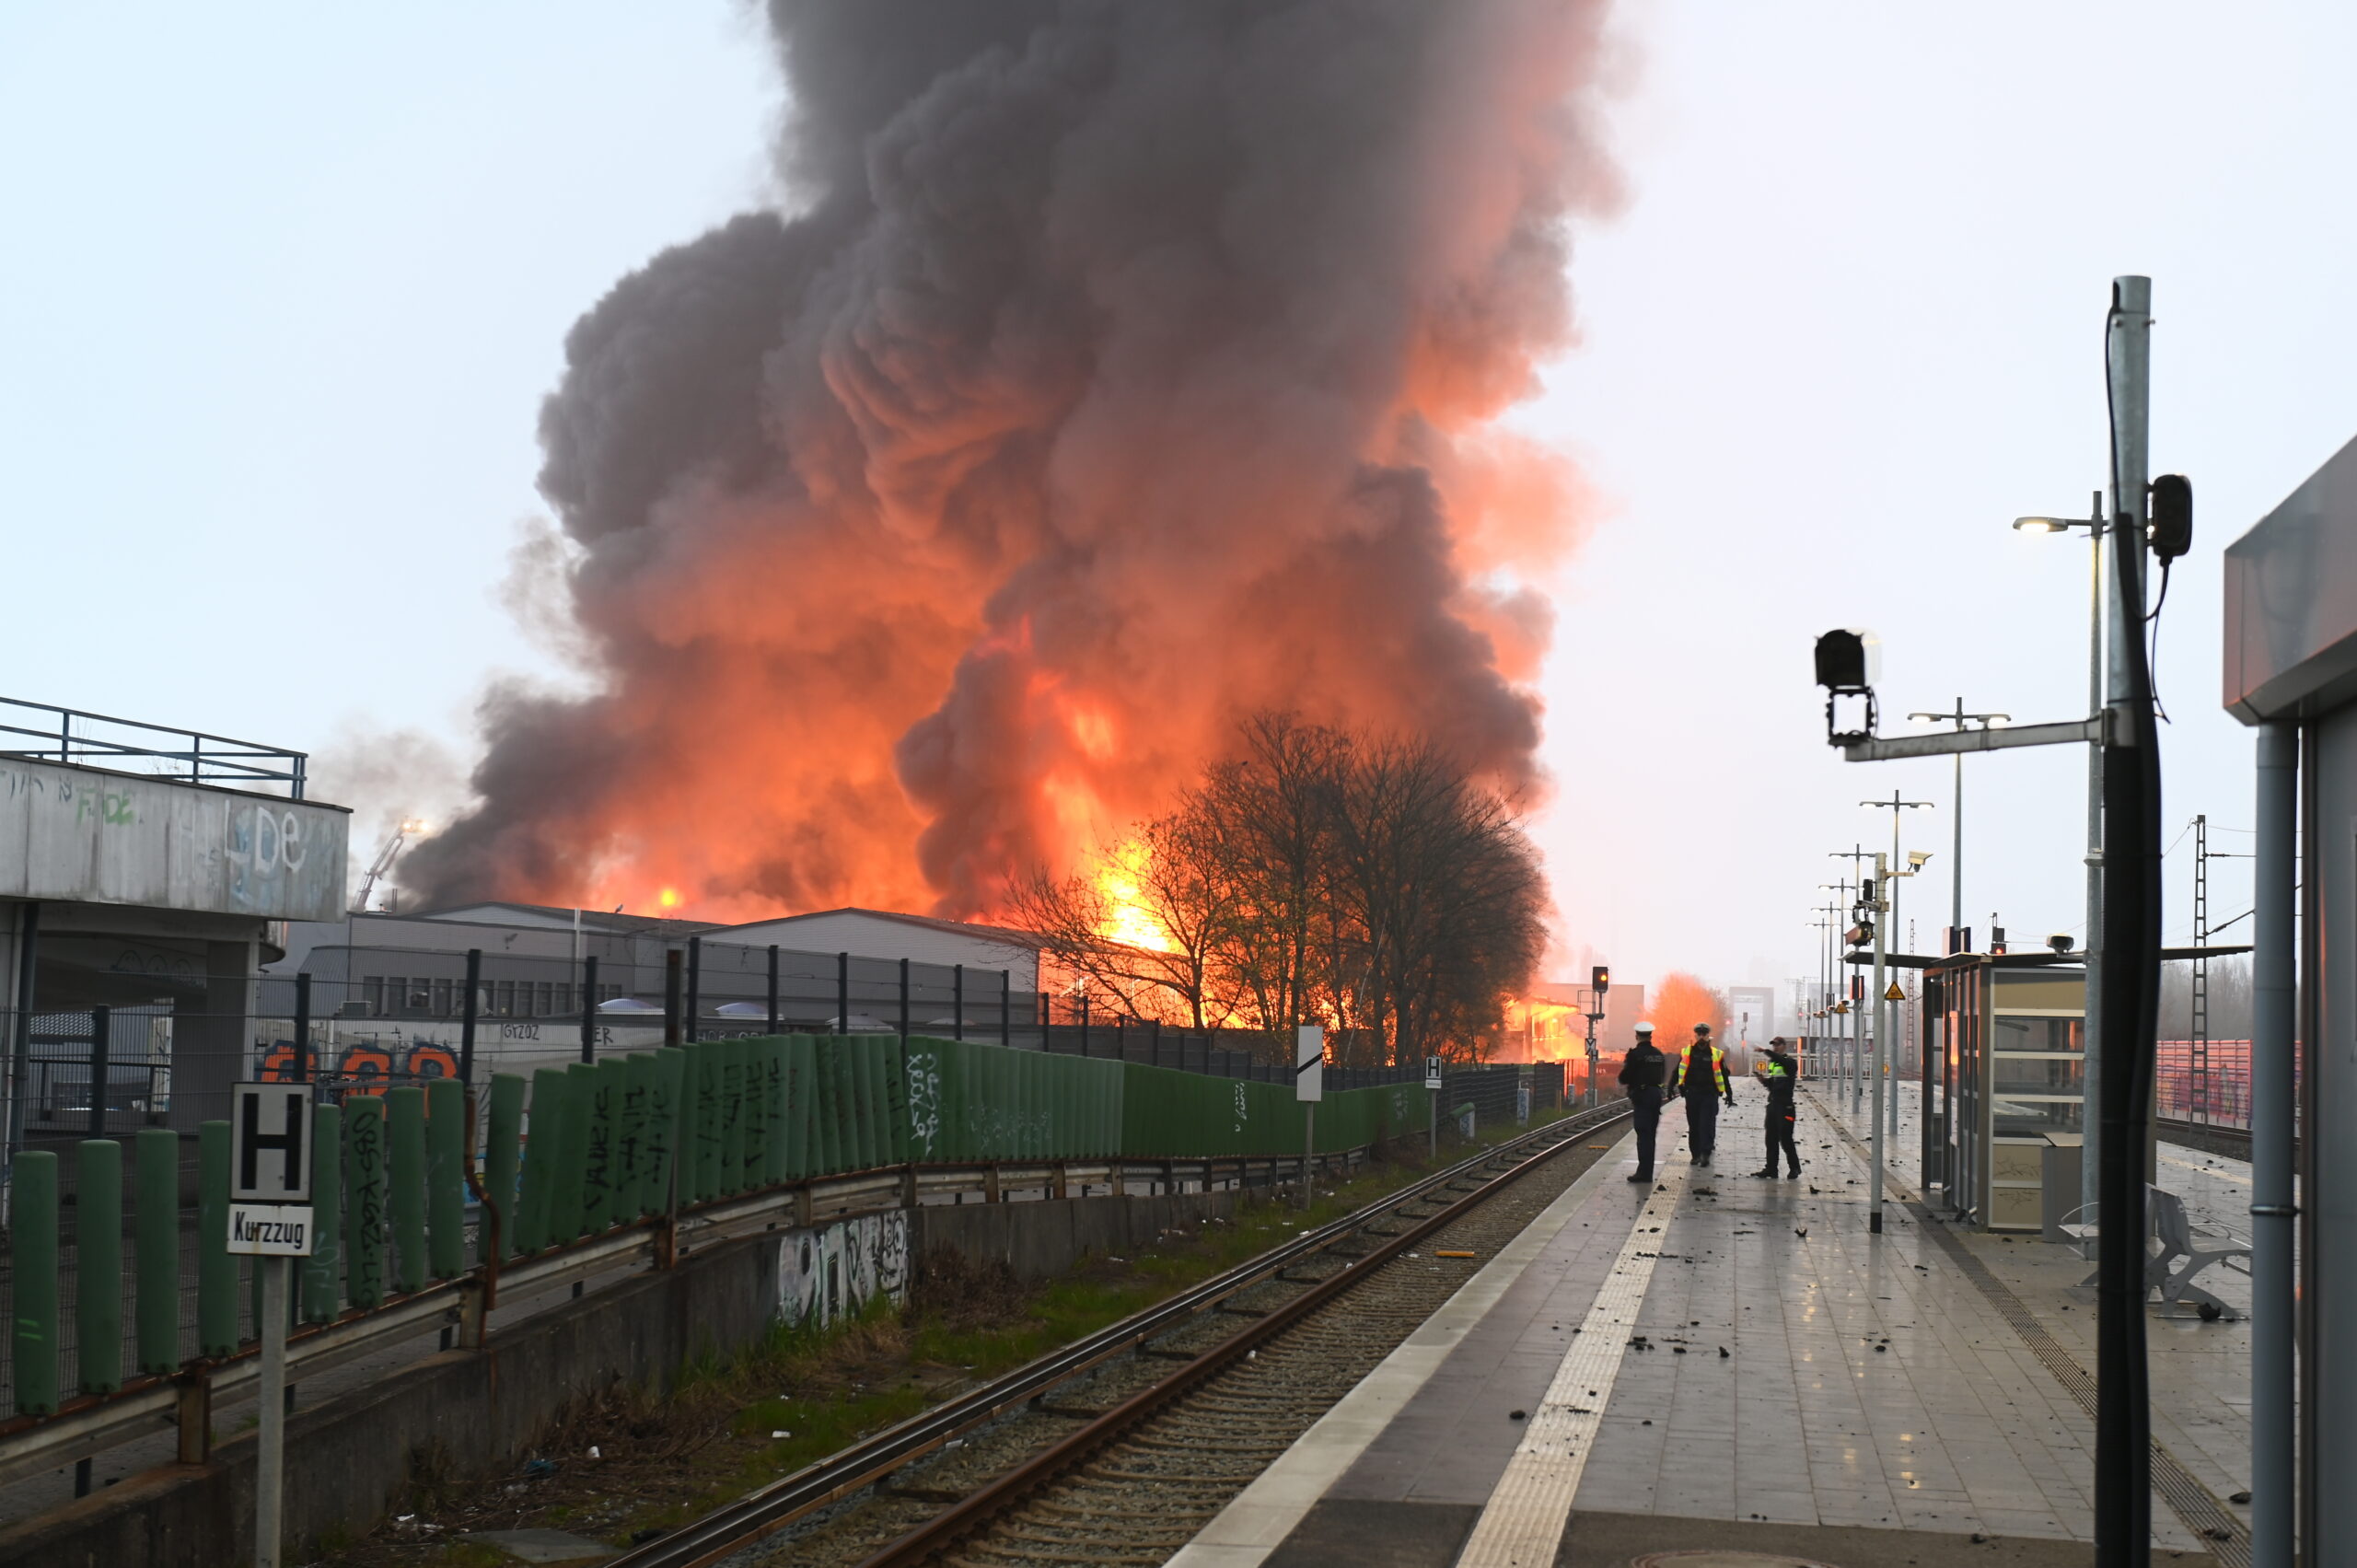 Polizisten stehen an einer Haltestelle am Bahnhof Hamburg-Rothenburgsort, während Flammen eines Großbrandes im Hintergrund zu sehen sind.